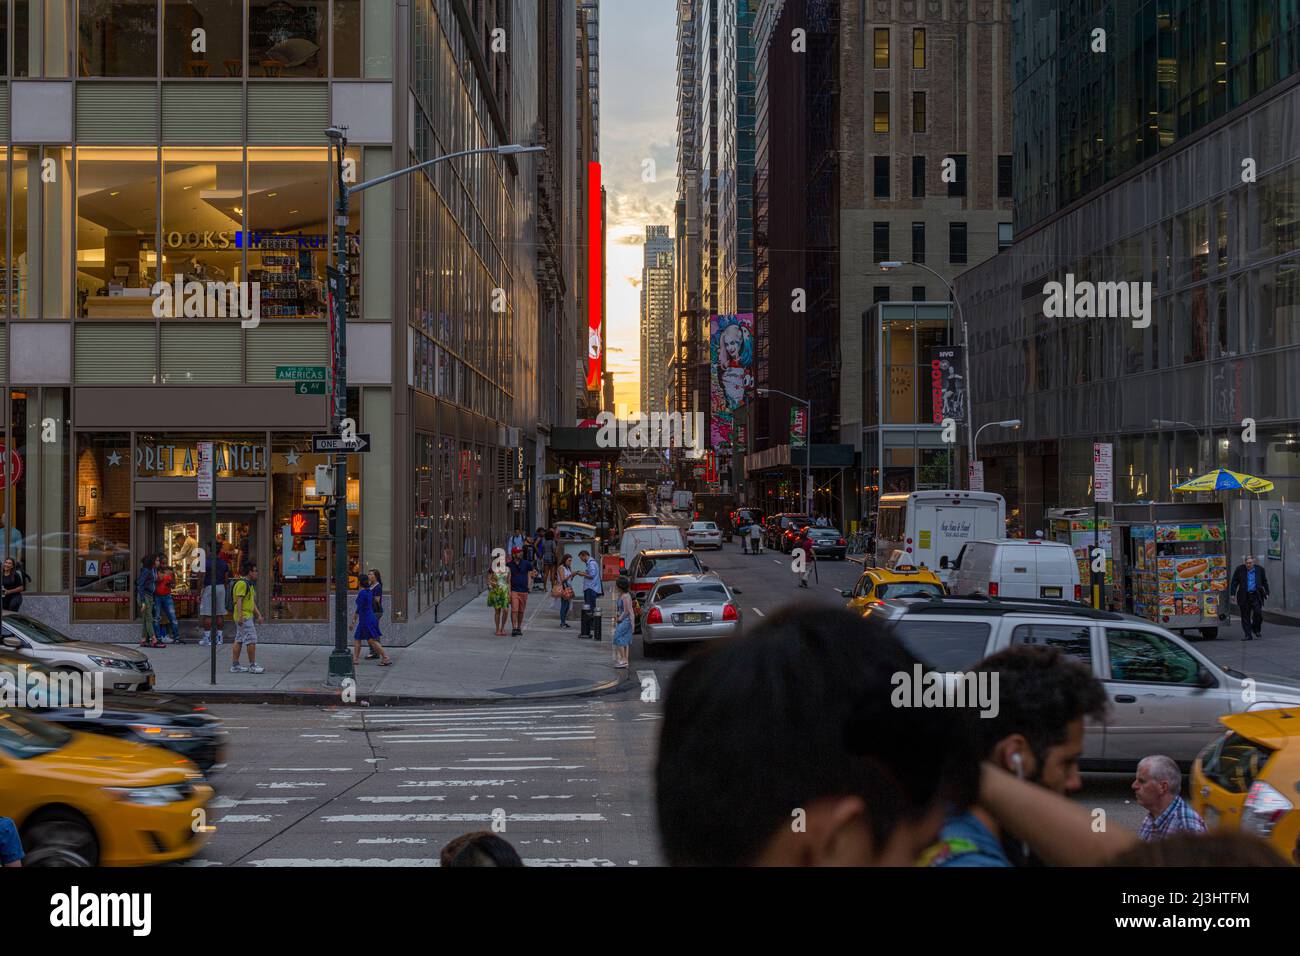 6th Ave/W41ST Street, New York City, NY, USA, Manhattatanhenge à New York City, le long de la 41st Street. Manhattanhenge est un événement au cours duquel le soleil couchant est aligné avec la grille de rue principale de Manhattan Banque D'Images